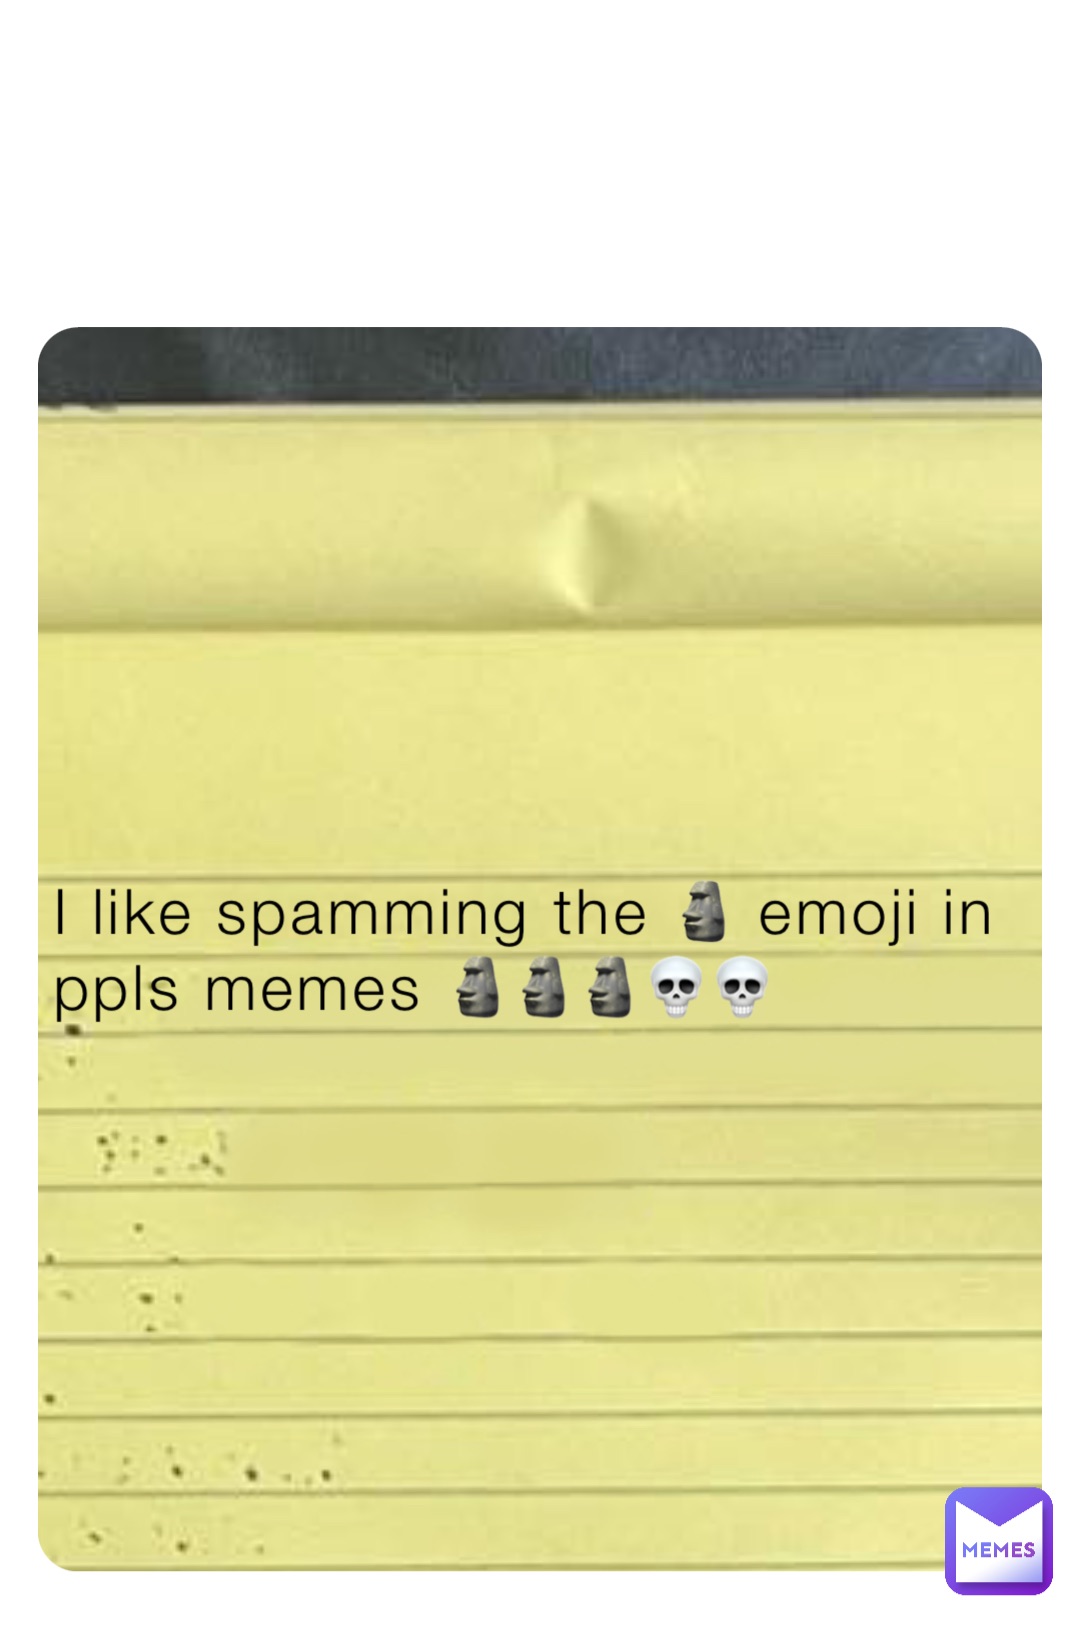 I like spamming the 🗿 emoji in ppls memes 🗿🗿🗿💀💀